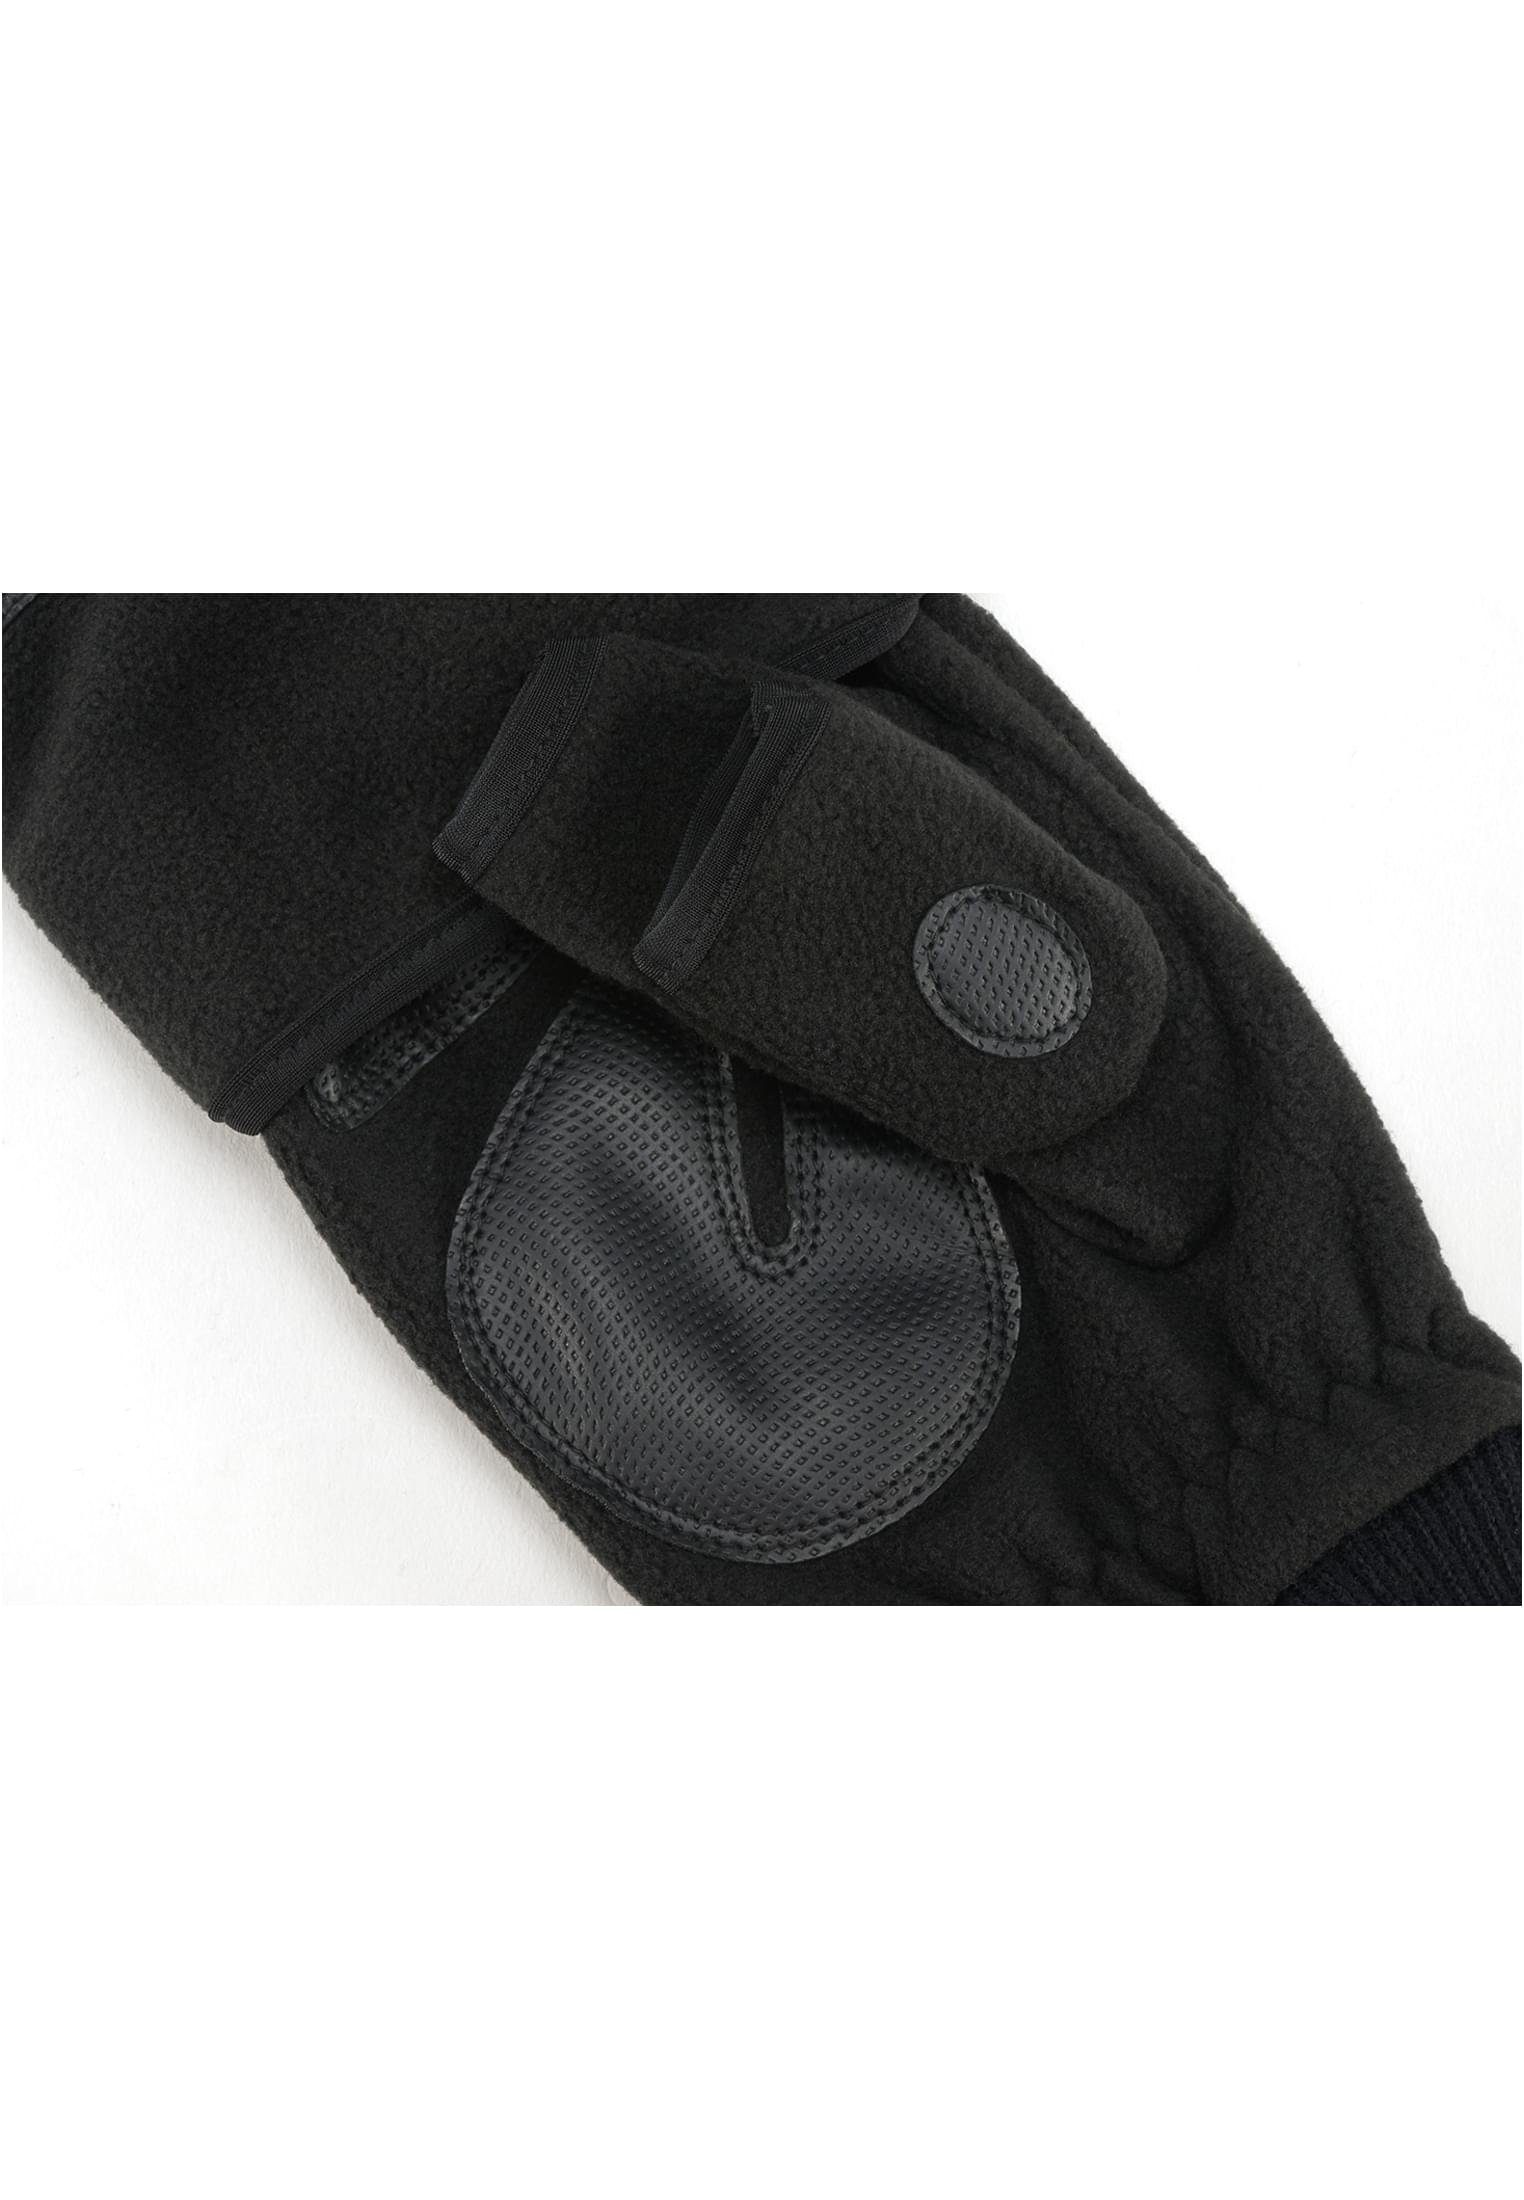 Brandit Baumwollhandschuhe Accessoires Gloves black Trigger